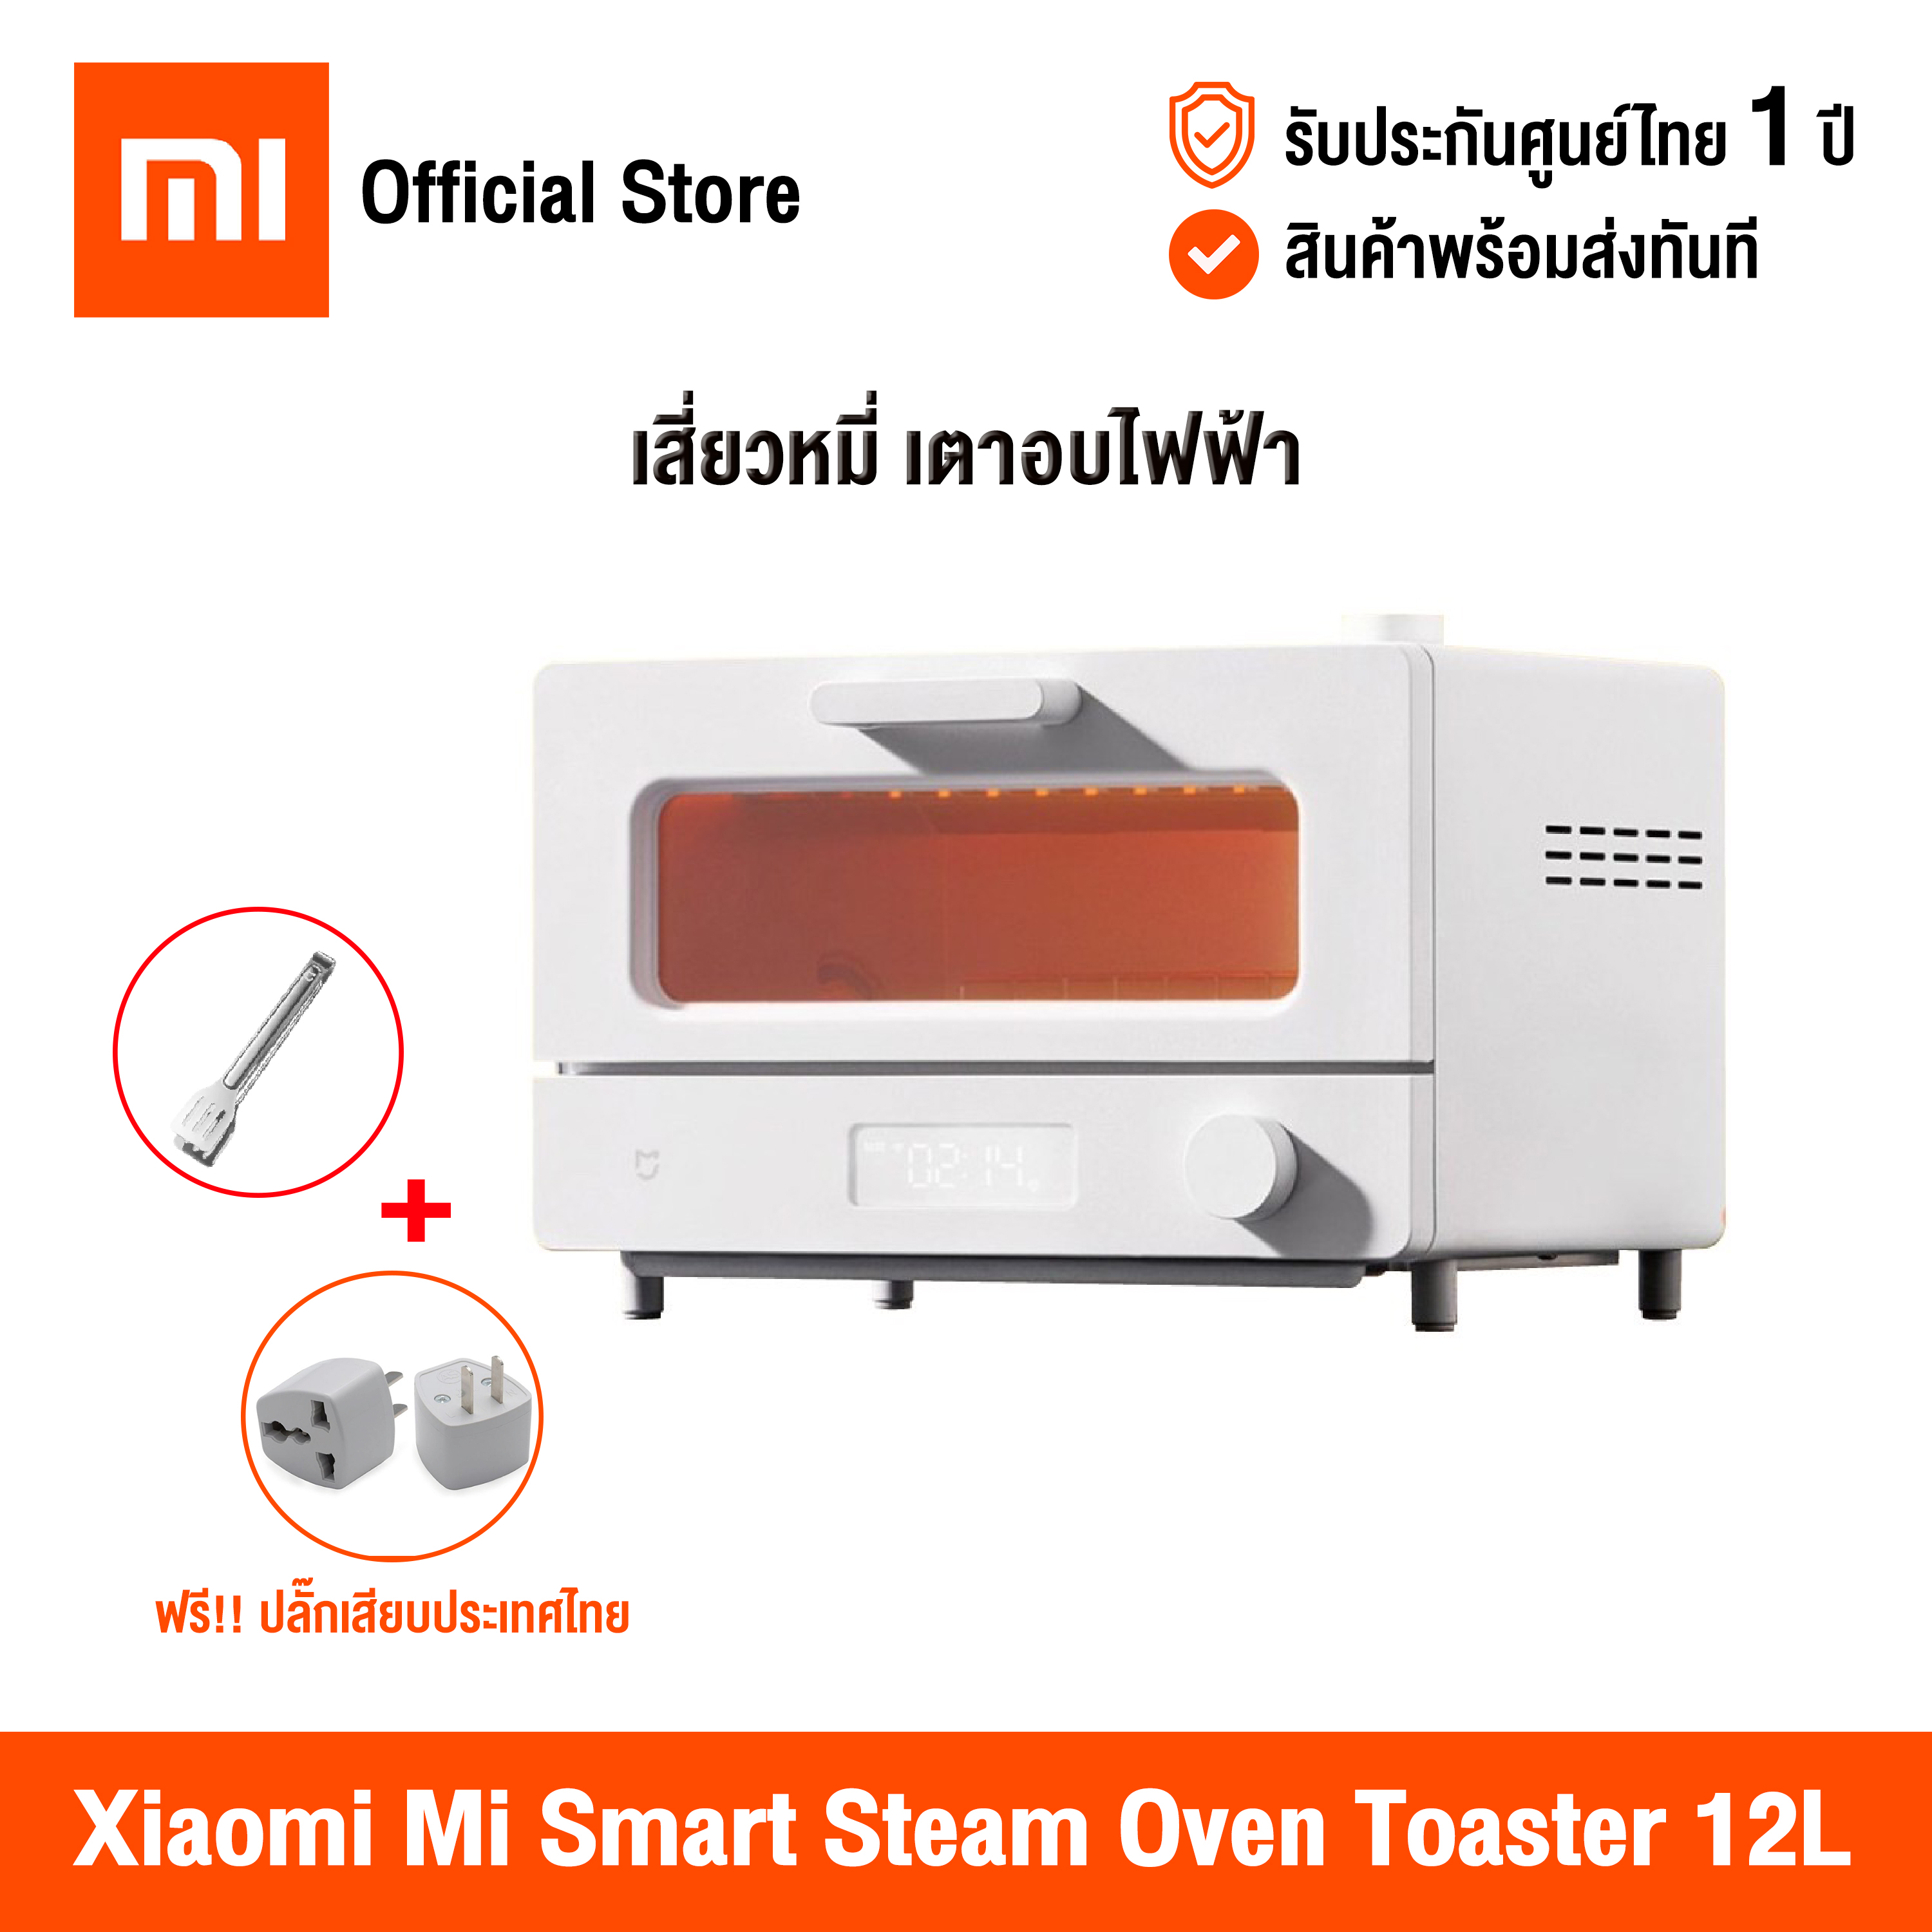 [ศูนย์ไทย] Xiaomi Mi Smart Steam Oven Toaster 12L เสี่ยวหมี่ เตาอบไฟฟ้า เครื่องอบเบเกอรี่ ขนาด 12 ลิตร